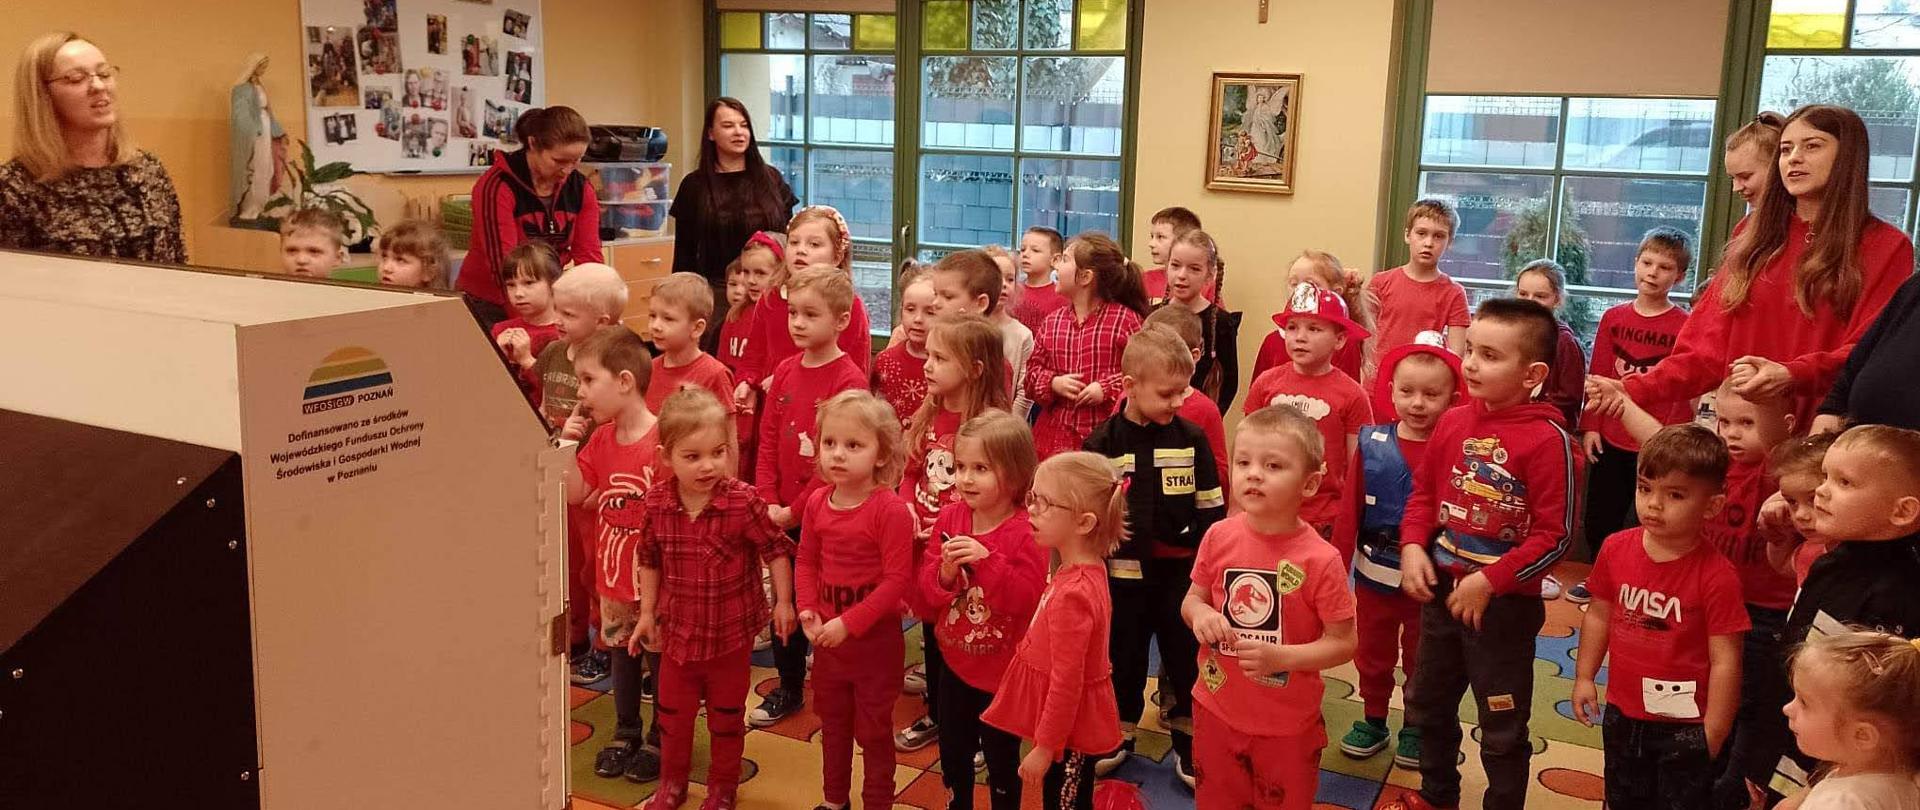 Na zdjęciu grupa dzieci w wieku przedszkolnym w sali lekcyjnej. Dzieci ubrane na czerwono czekają na prelekcje strażaków z użyciem symulatora zagrożeń. W sali znajdują się również opiekunowie najmłodszych